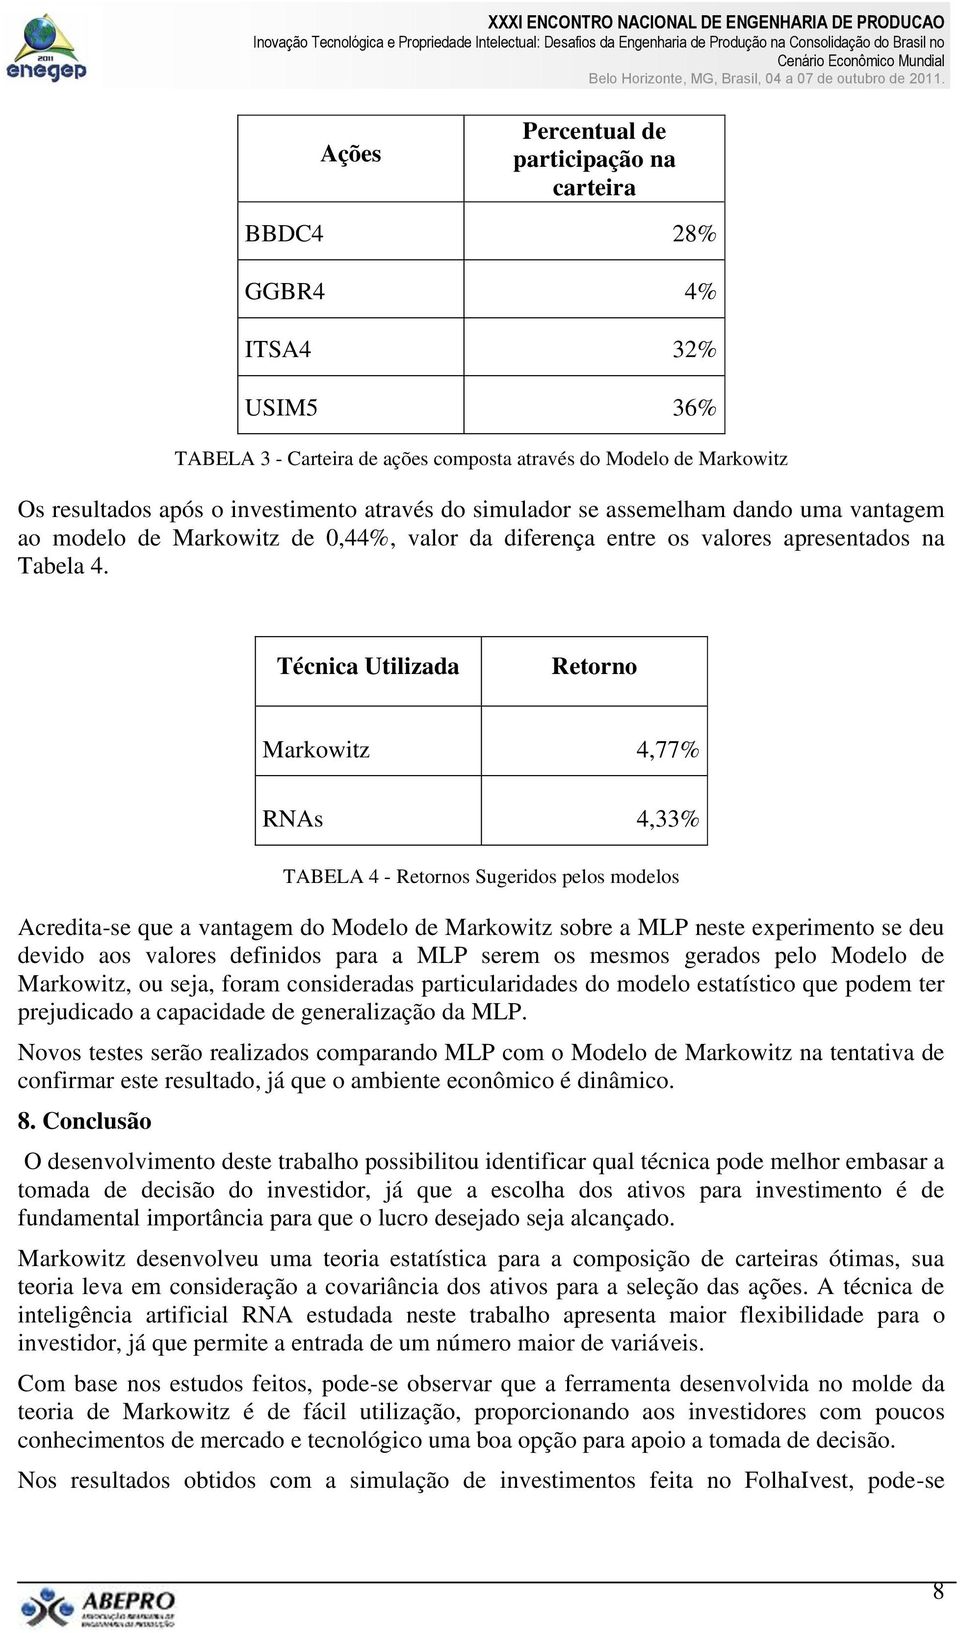 Técnica Utilizada Retorno Markowitz 4,77% TABELA 4 - Retornos Sugeridos pelos modelos Acredita-se que a vantagem do Modelo de Markowitz sobre a MLP neste experimento se deu devido aos valores